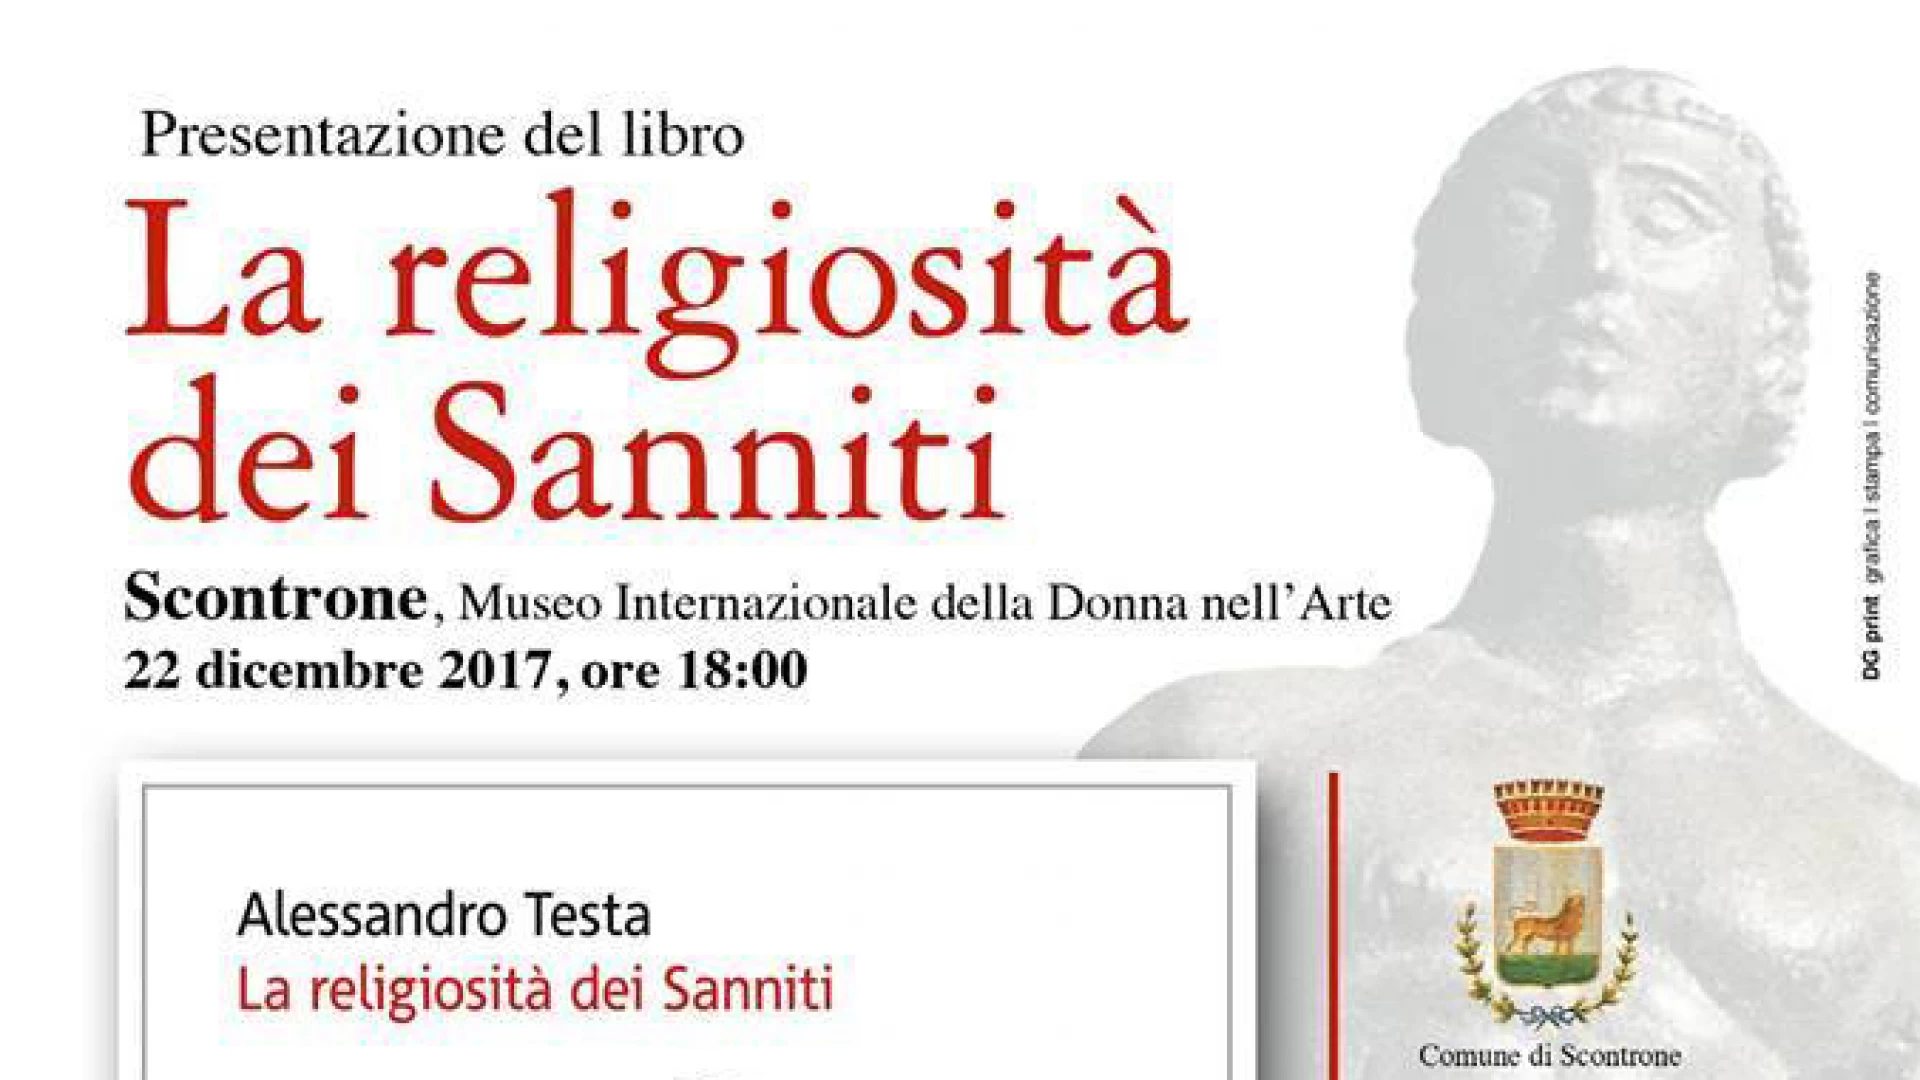 Cultura: la religiosità dei Sanniti nel libro di Alessandro Testa. La presentazione questa sera a Scontrone in Abruzzo.